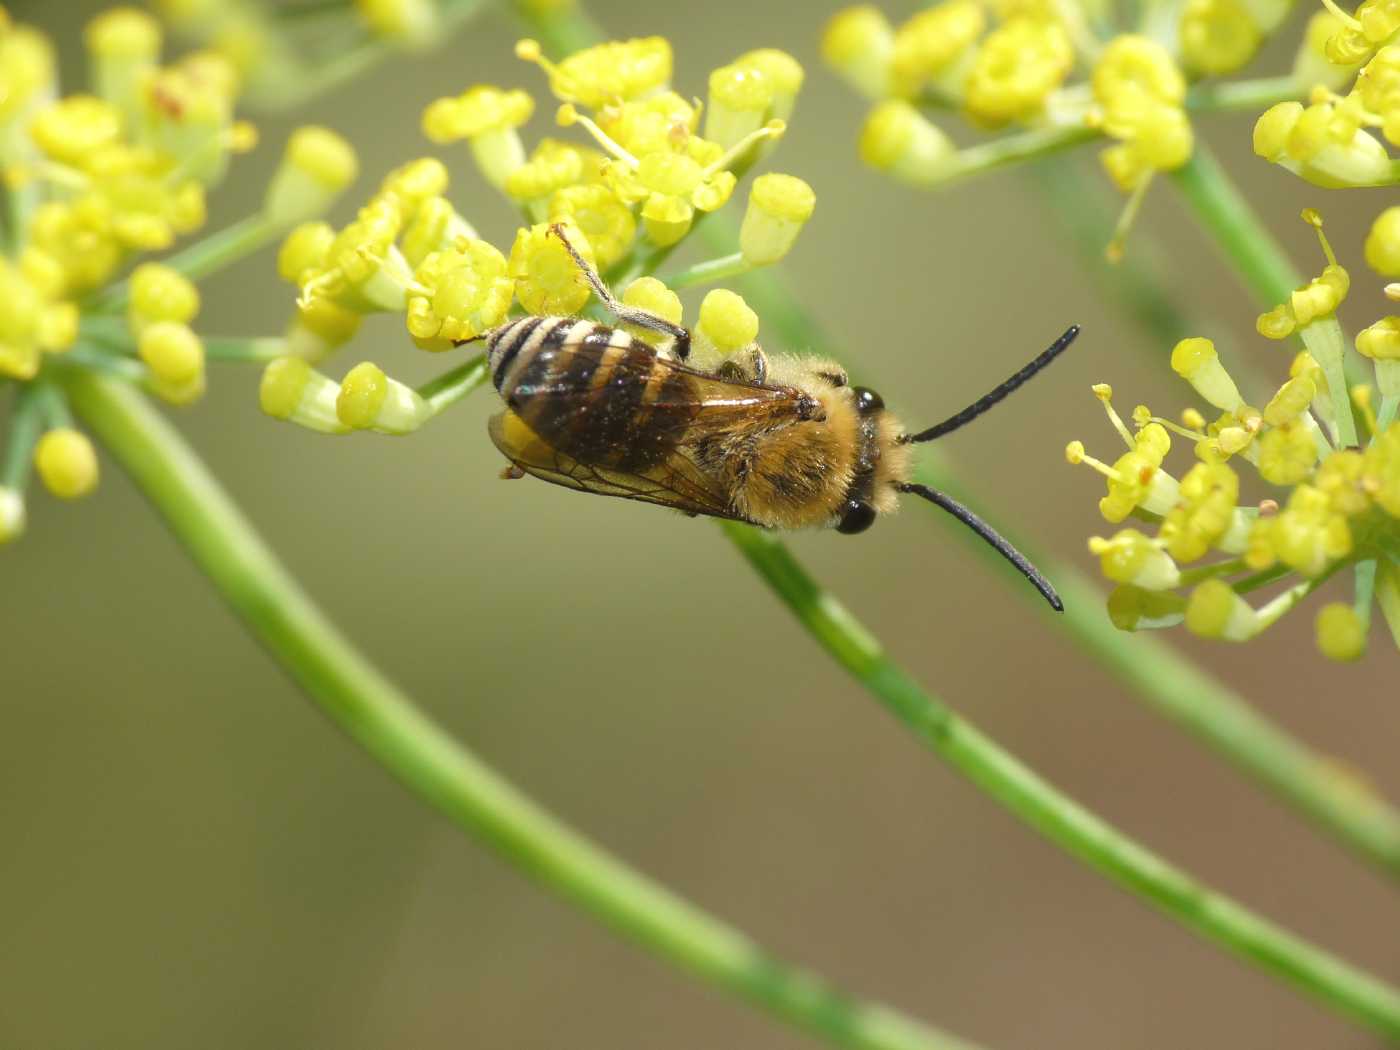 Colletes hederae (Apidae Colletinae)